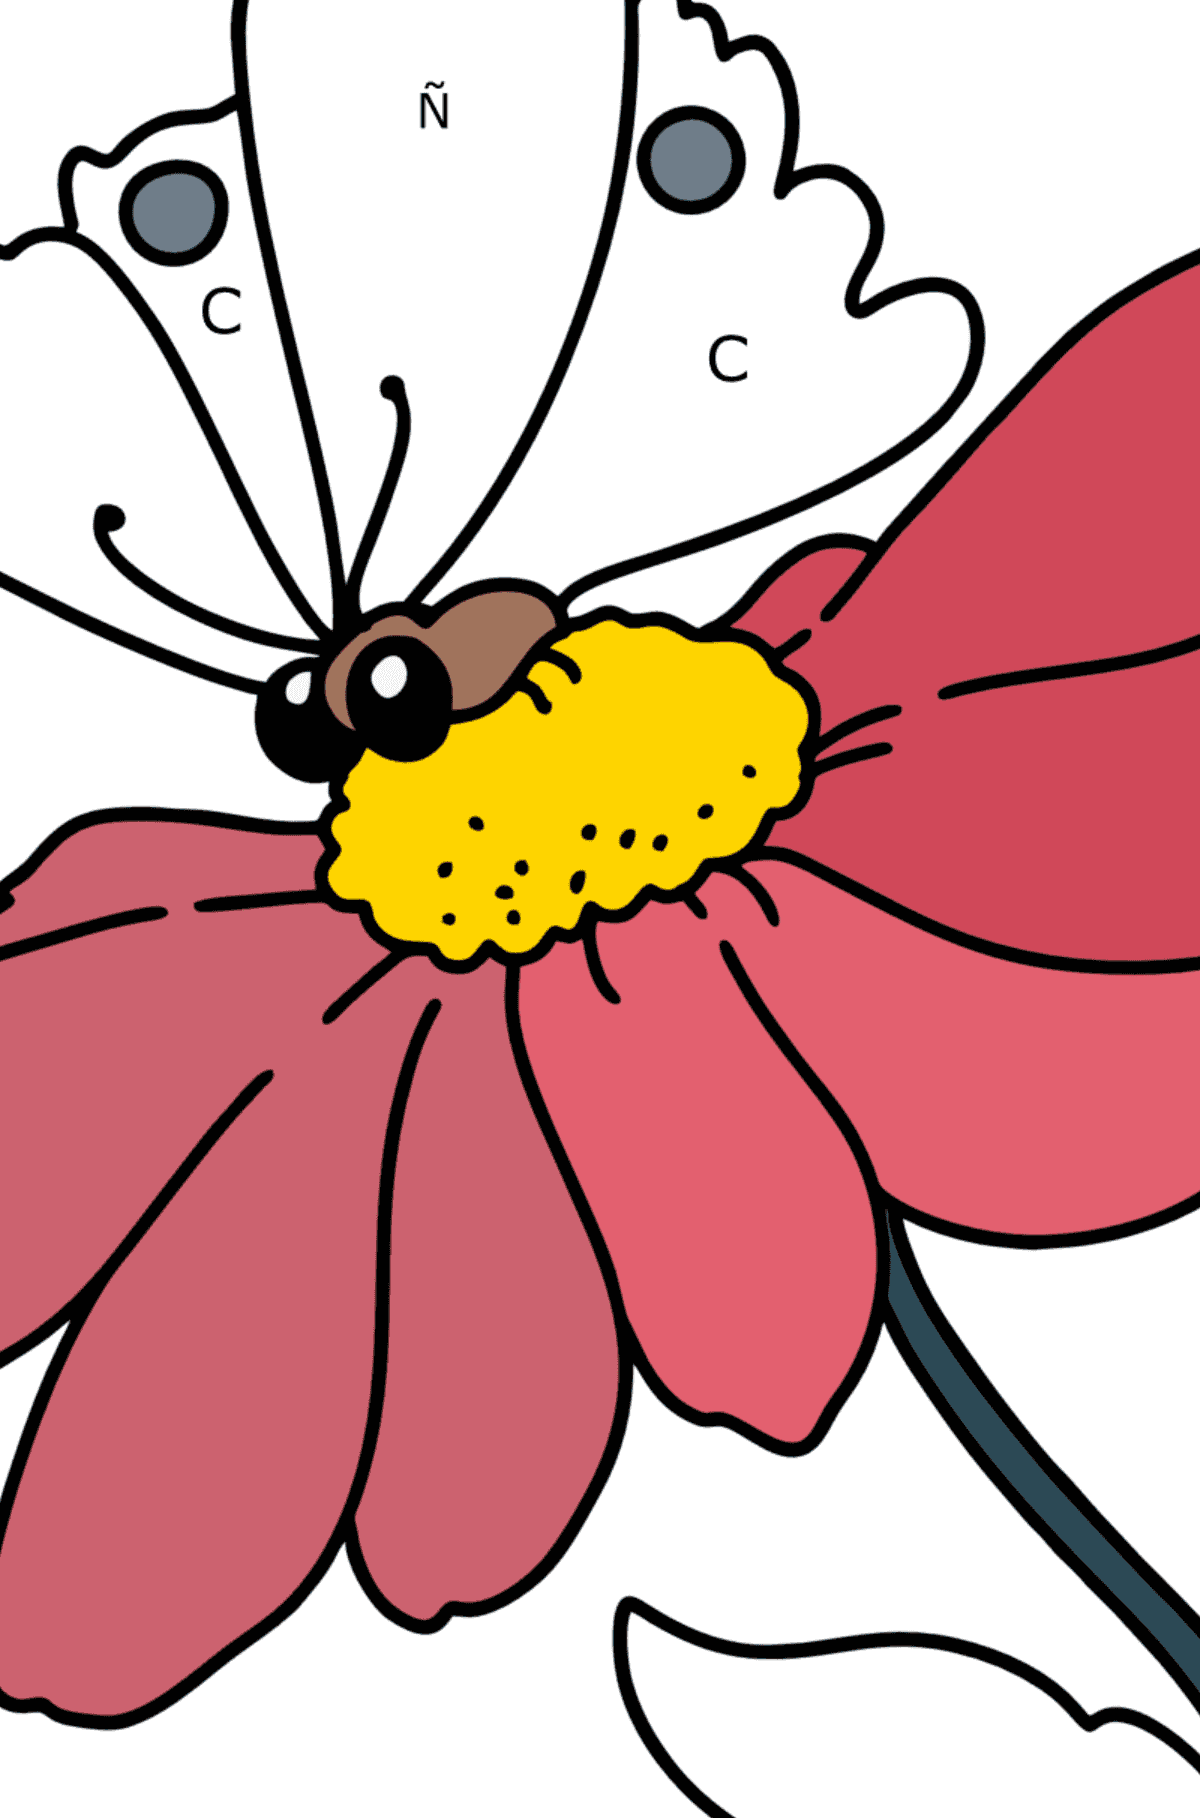 Dibujo para colorear Verano - Flores y mariposas - Colorear por Letras para Niños